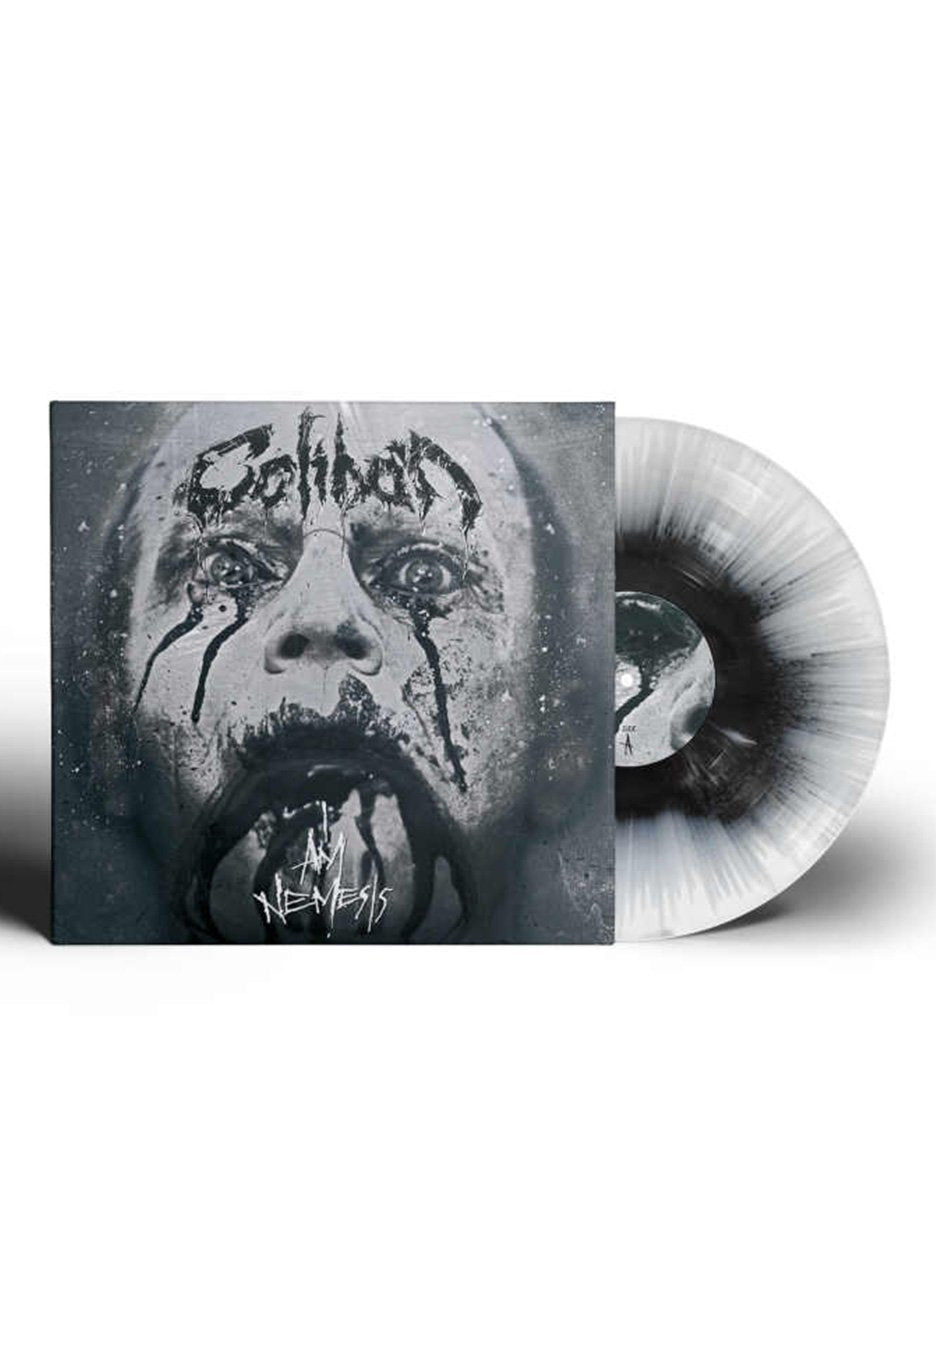 Caliban - I Am Nemesis Black/White - Splattered Vinyl